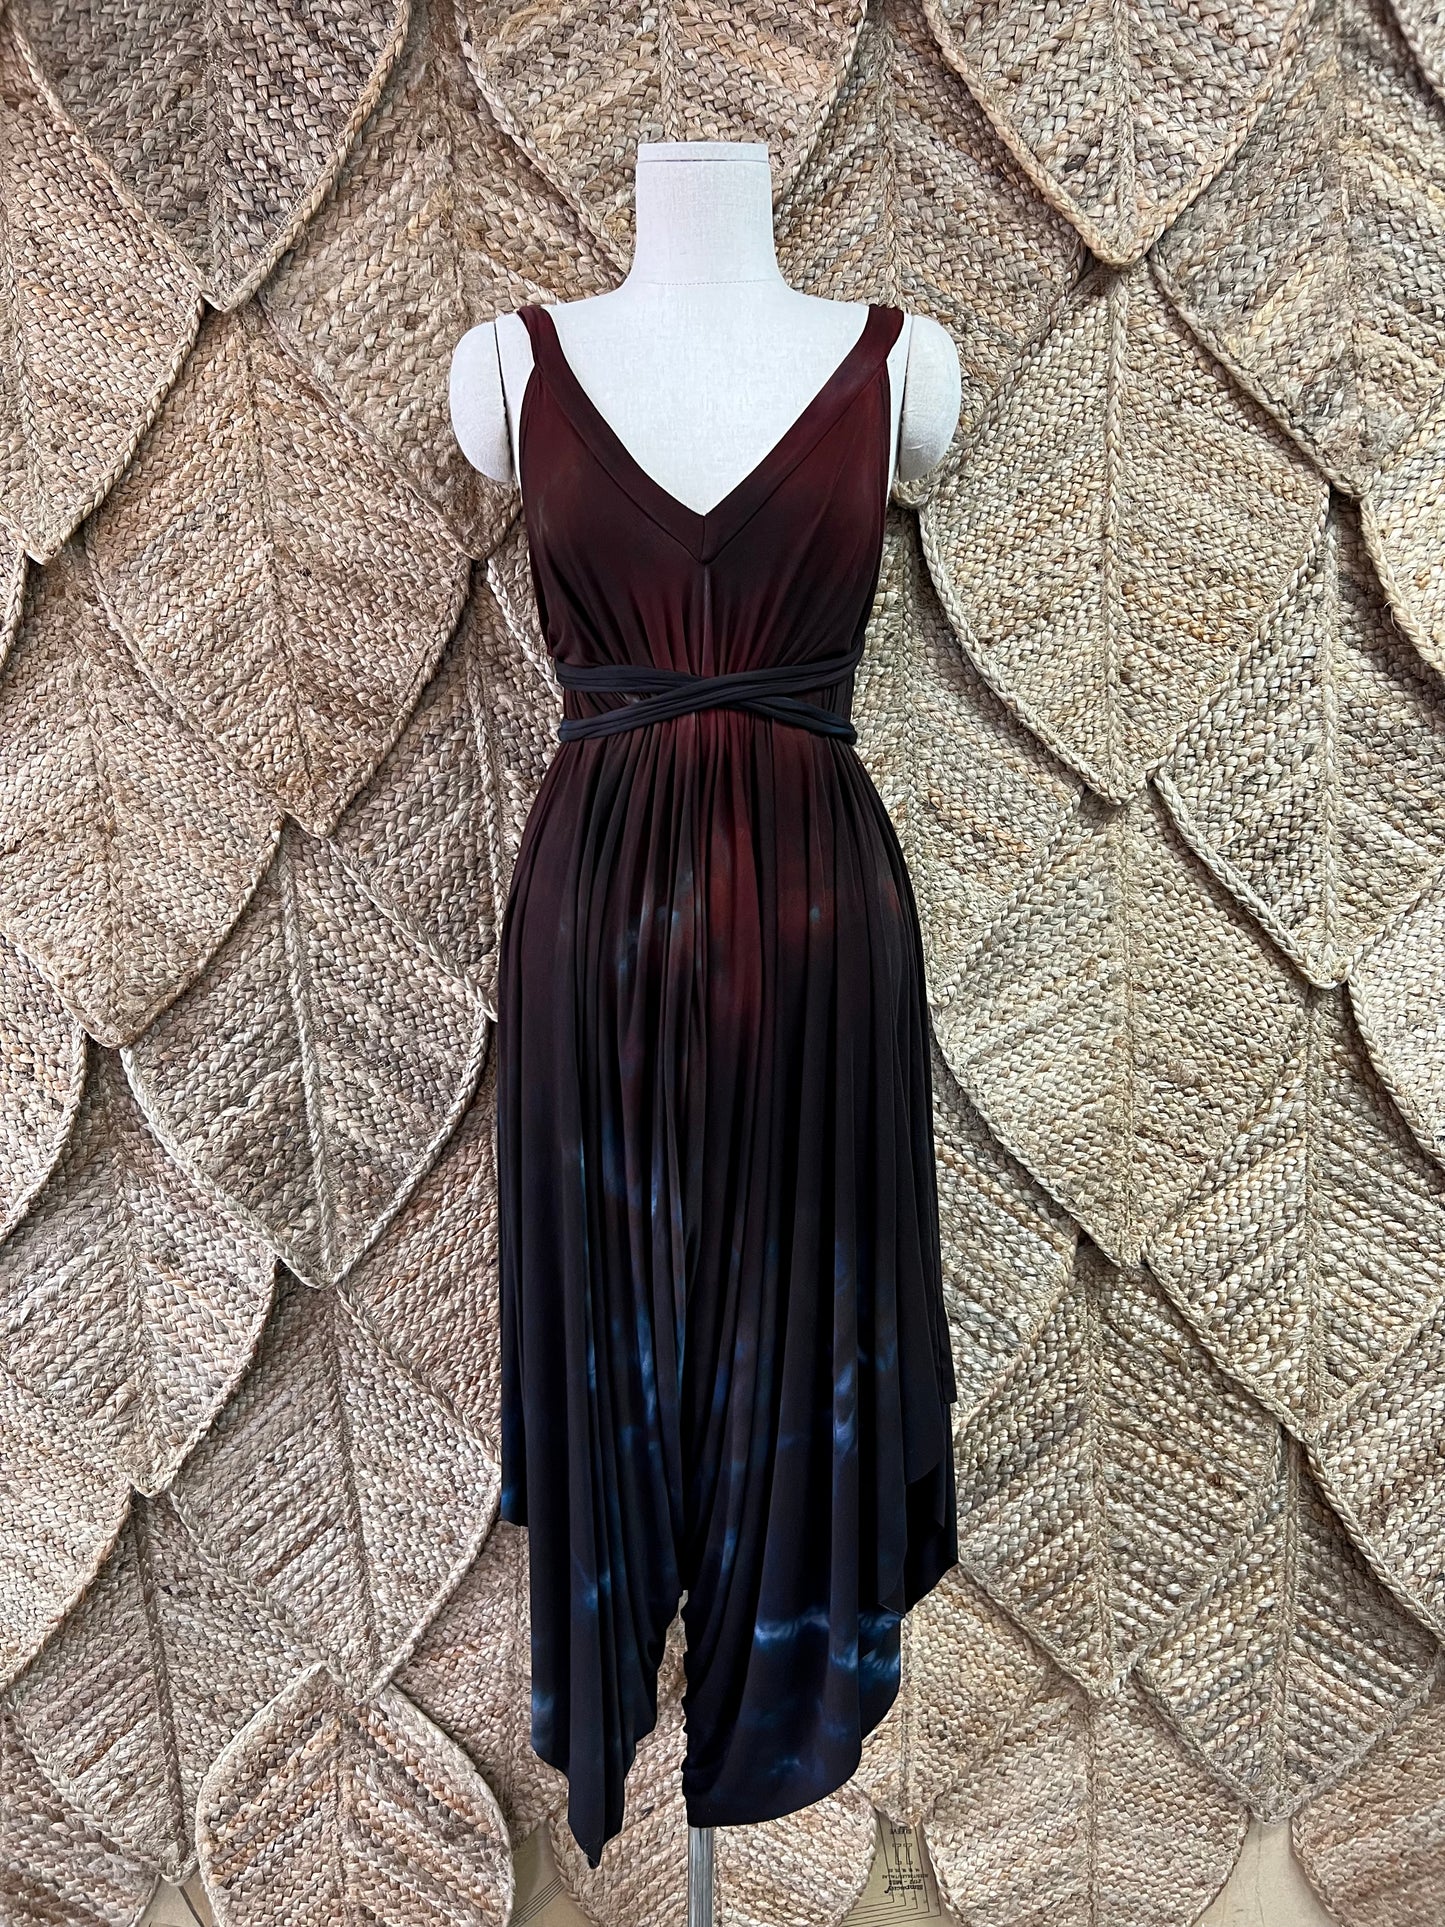 Wytchdust Fantail Jumpsuit/Dress